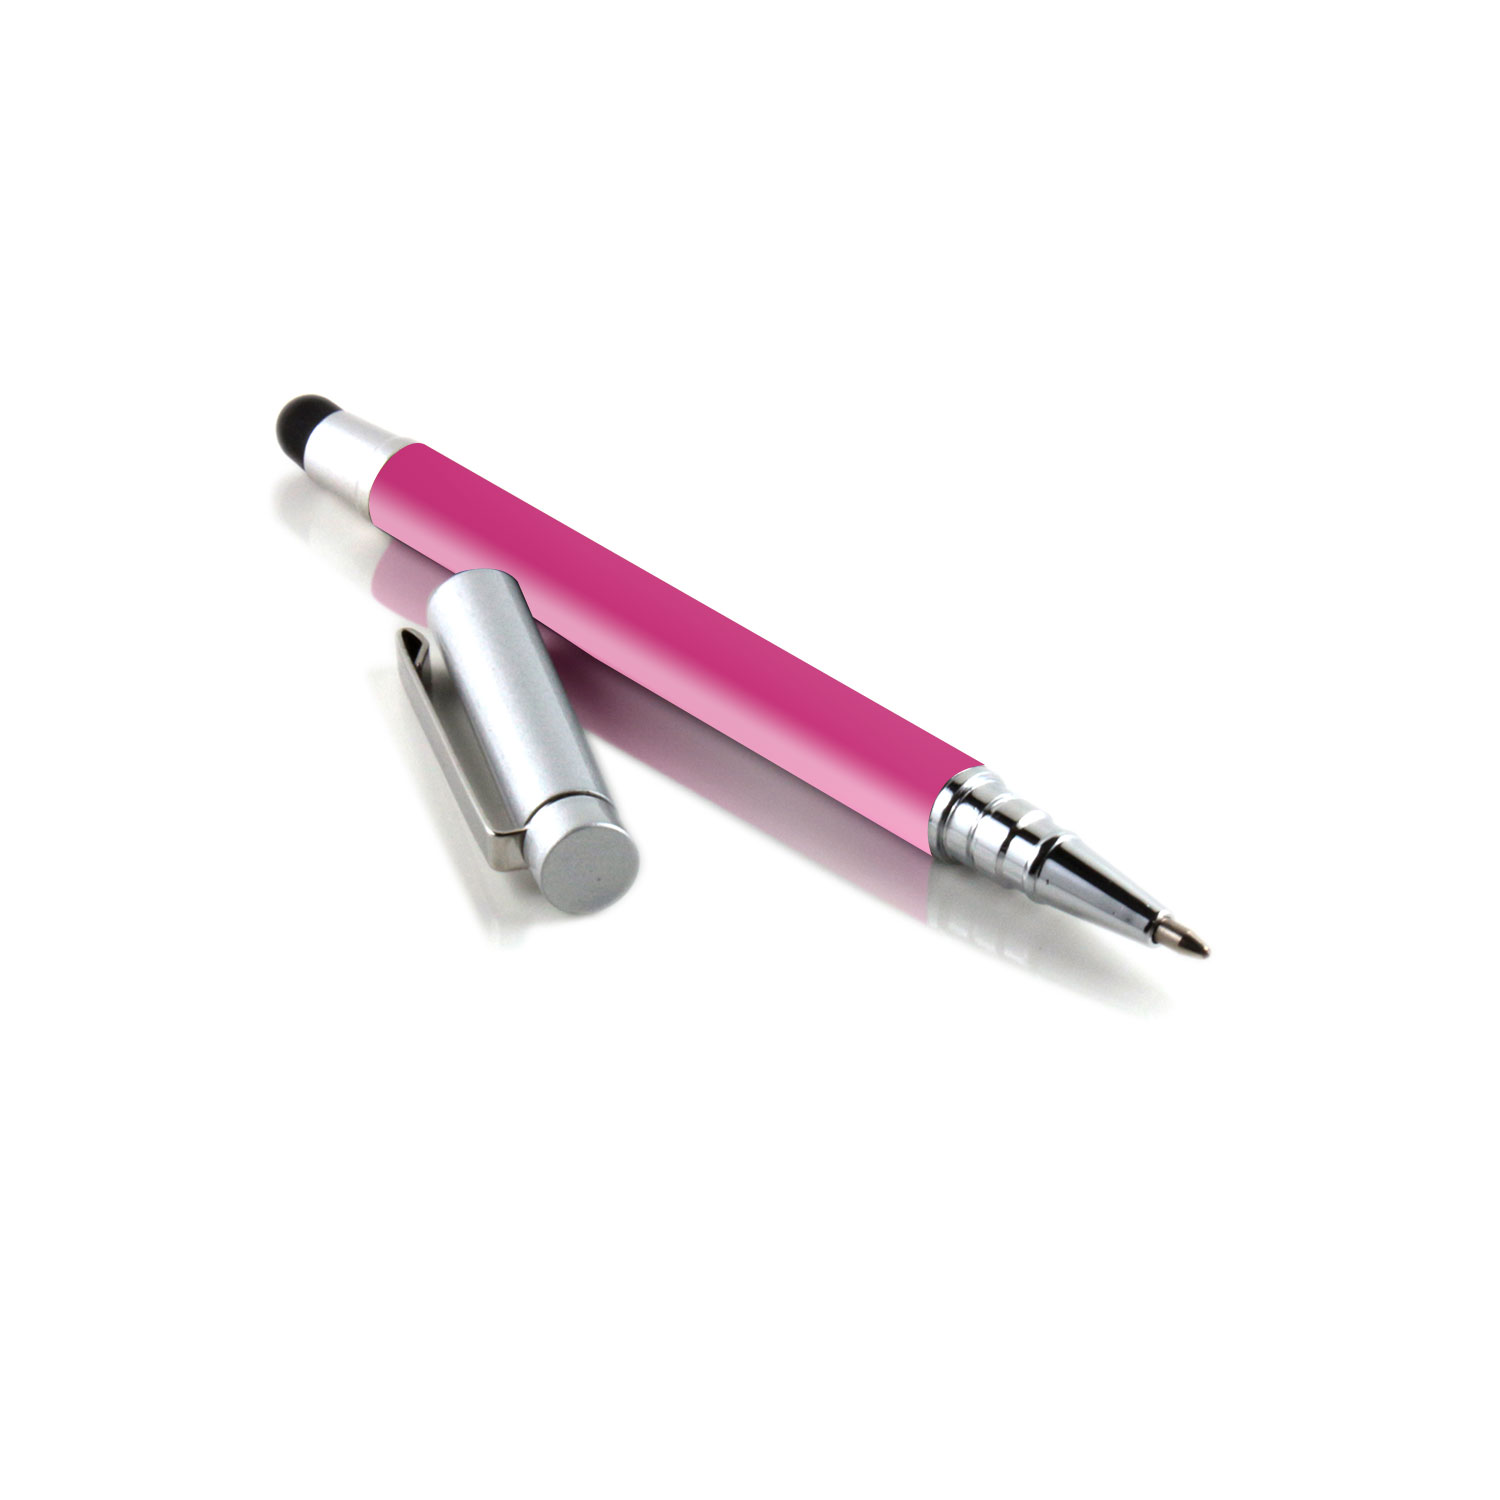 SLABO ergonomischer | Stylus iPhone und Eingabestift Kugelschreiber SILBER | Pen Touch PINK iPad etc. für Touchpen Stift 